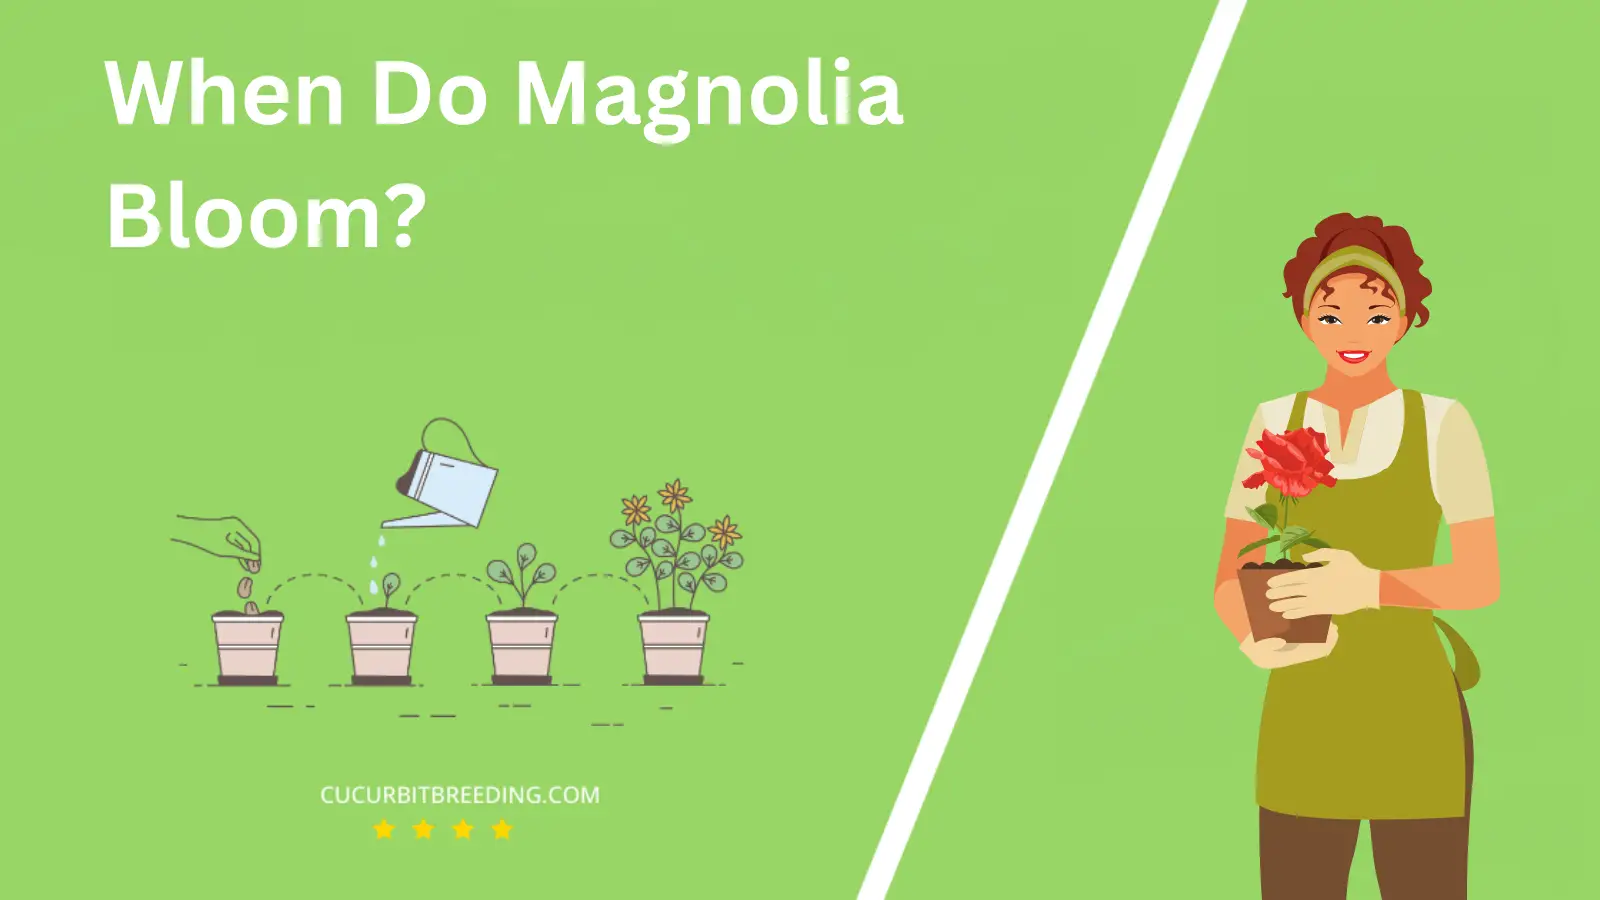 When Do Magnolia Bloom?